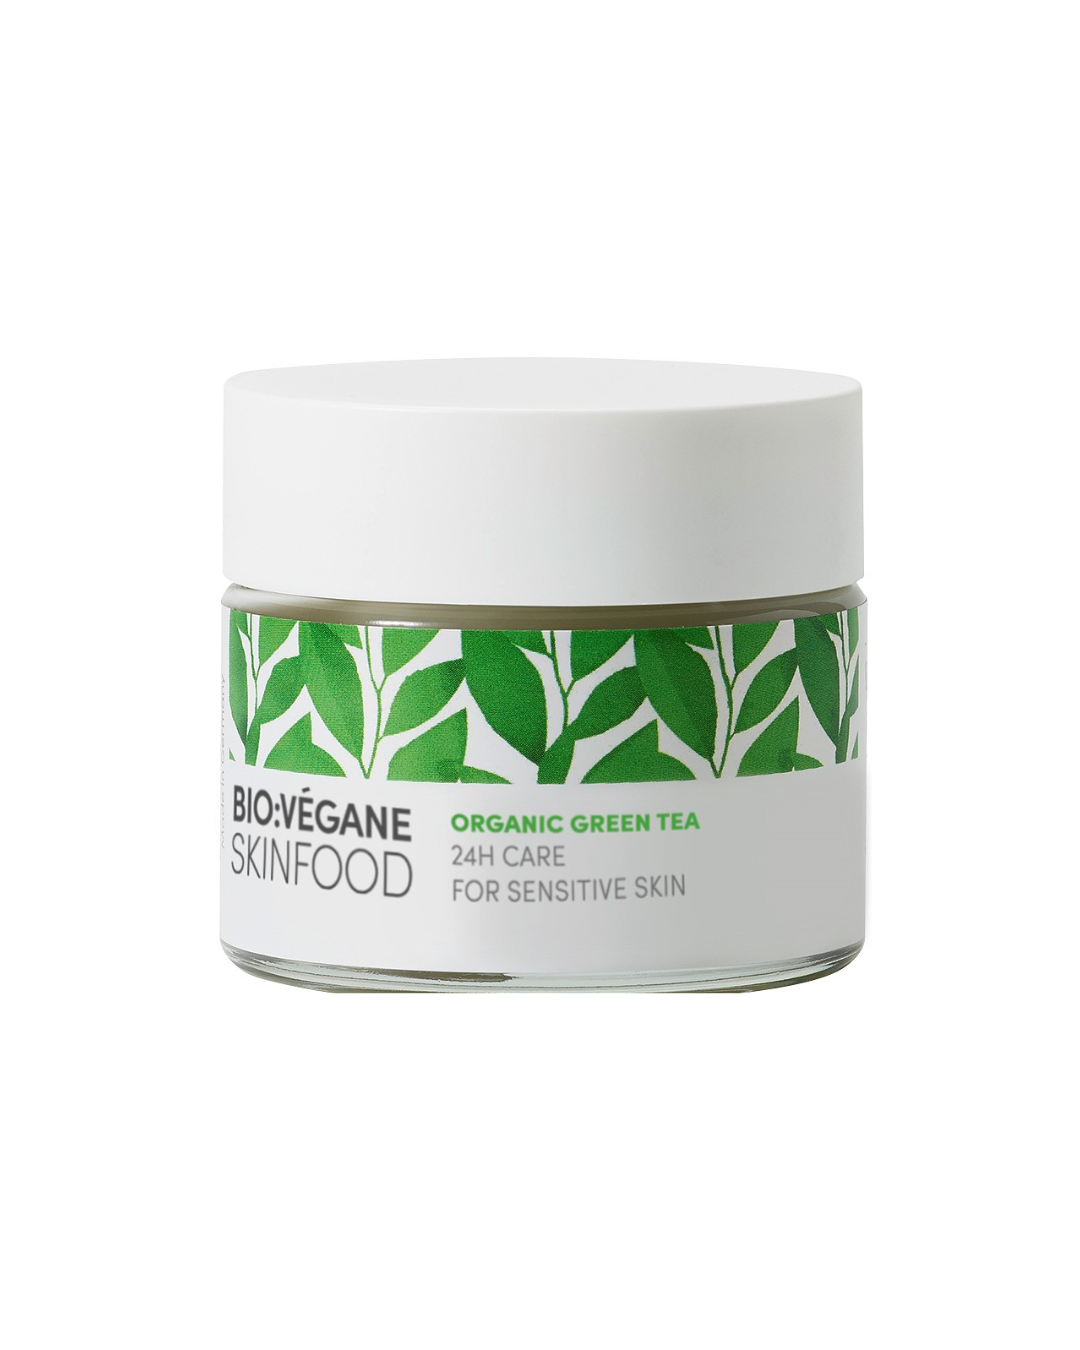 Creme Rosto Cuidado 24H Pele Sensível | Chá Verde Orgânico / Organic Green Tea 24H Care